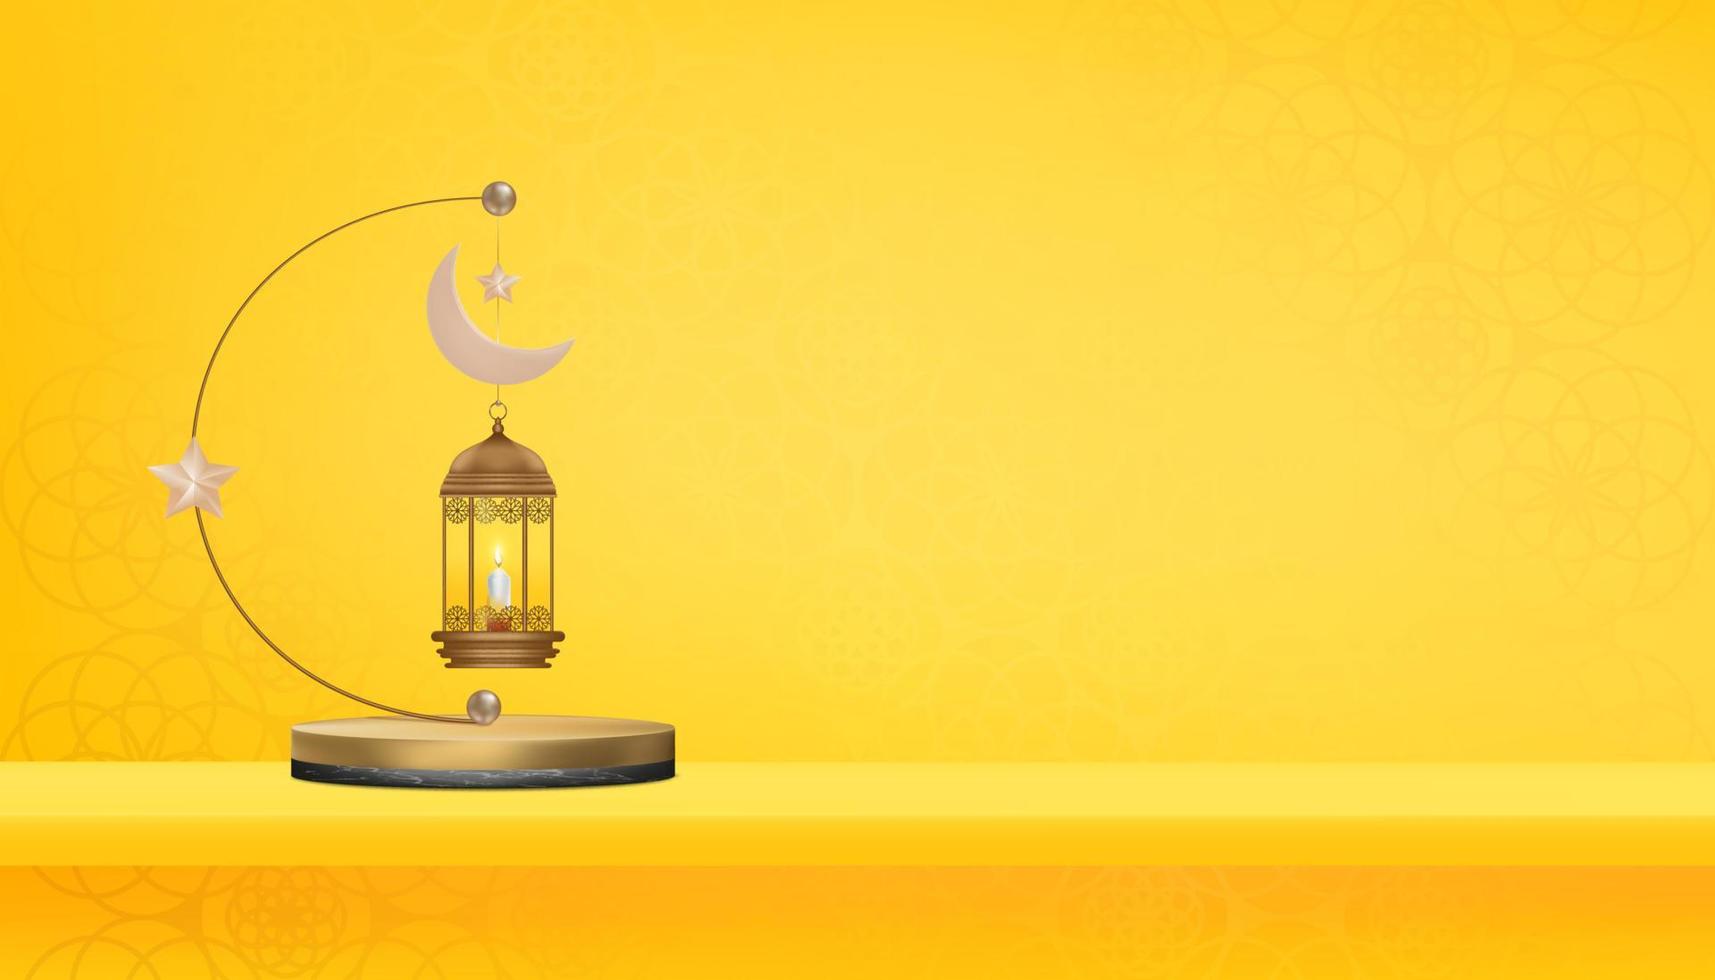 islamic 3d podium med traditionell islamic lykta, halvmåne måne och stjärna på gul bakgrund, vektor baner religion av muslim symboliskt, eid ul fitr,ramadan kareem, eid al adha, eid mubarak, eid el kabir